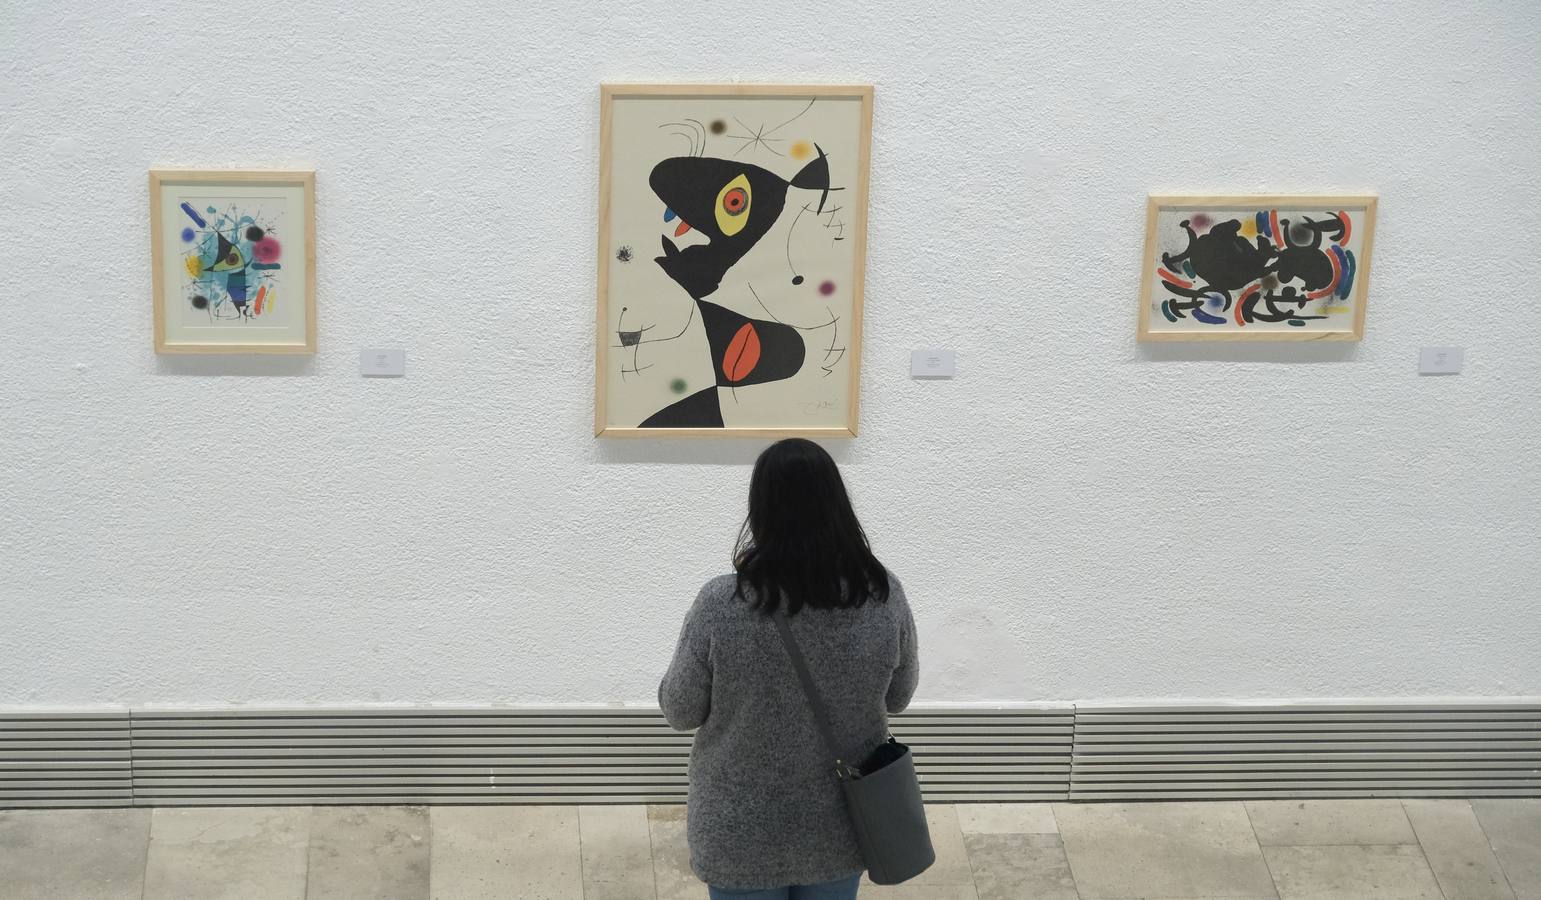 'Miró. El jardín de las maravillas', que podrá visitarse hasta el 7 de enero, muestra más de medio centenar de obras pertenecientes a la colección Guido Guastalla